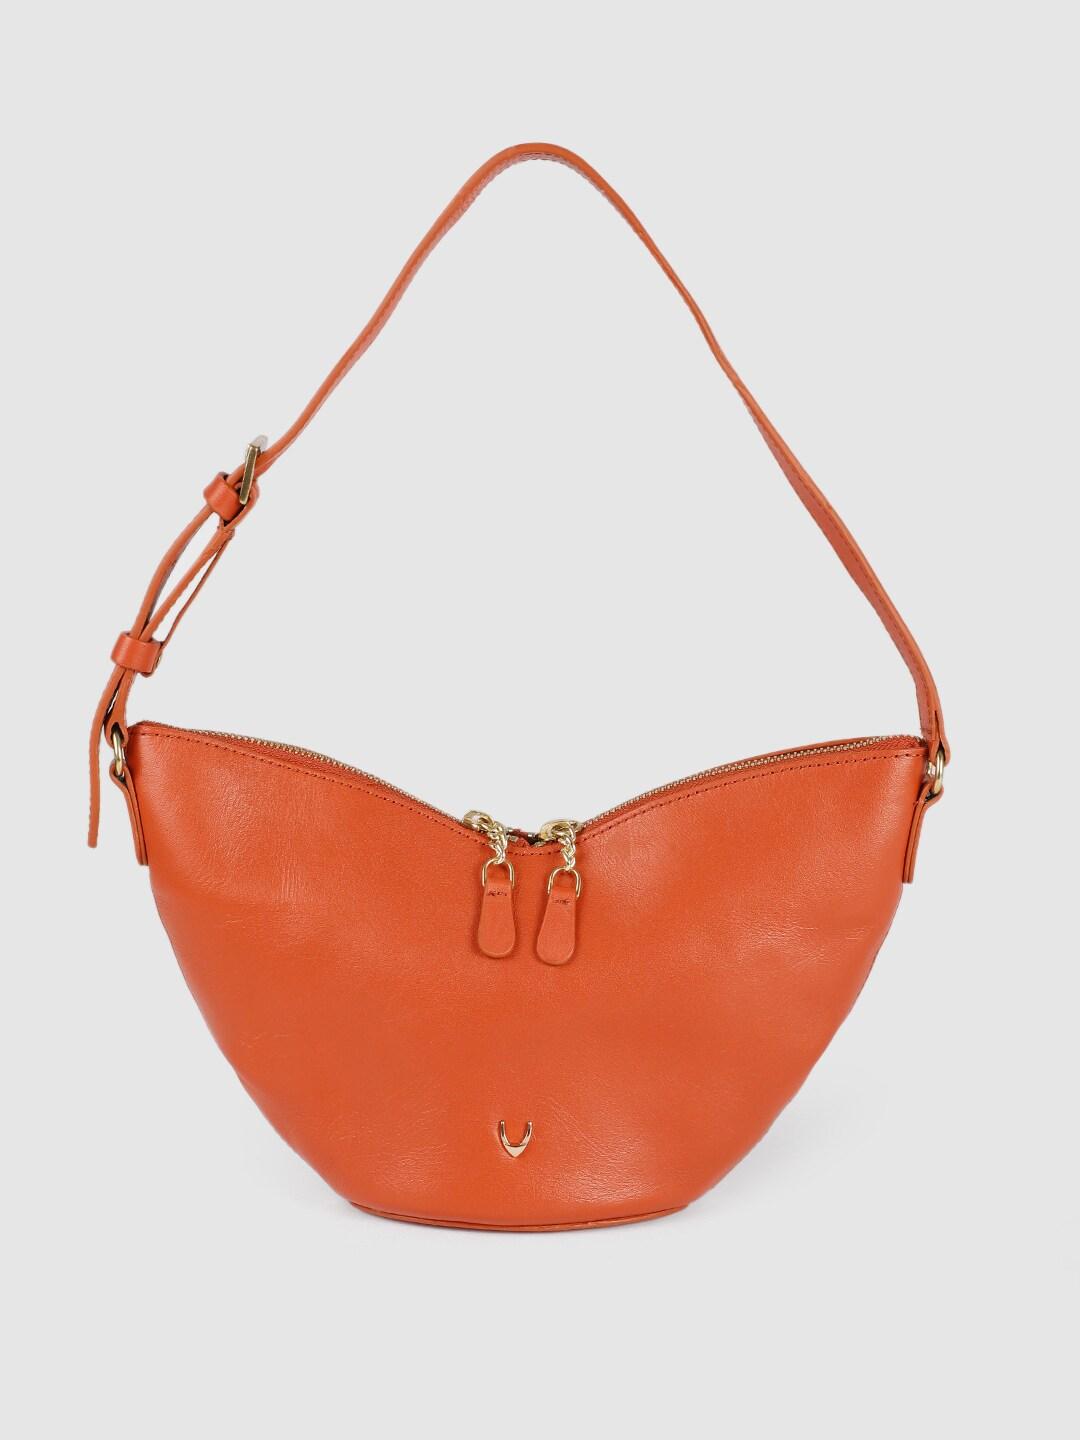 Hidesign Orange Solid Leather Structured Shoulder Bag